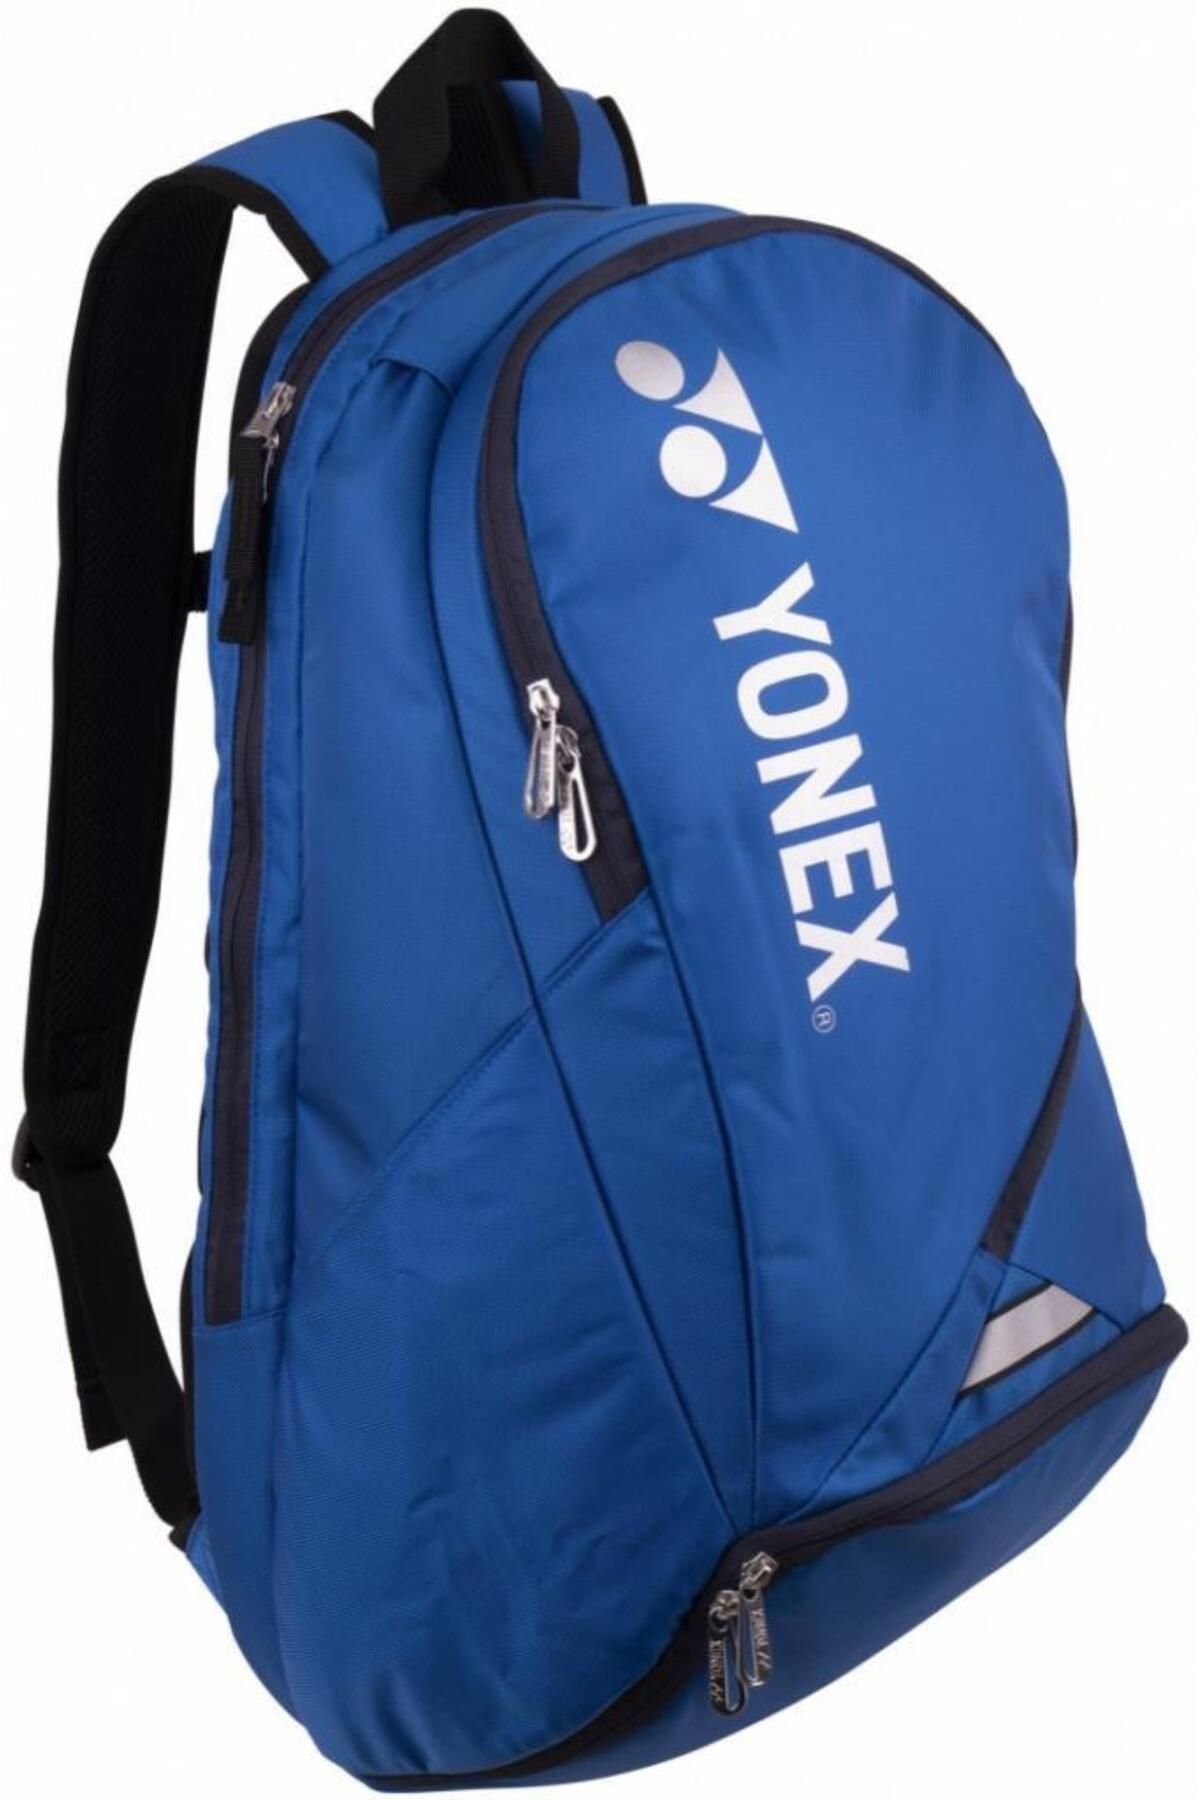 Yonex Pro Backpack 92312 Tenis Çantası